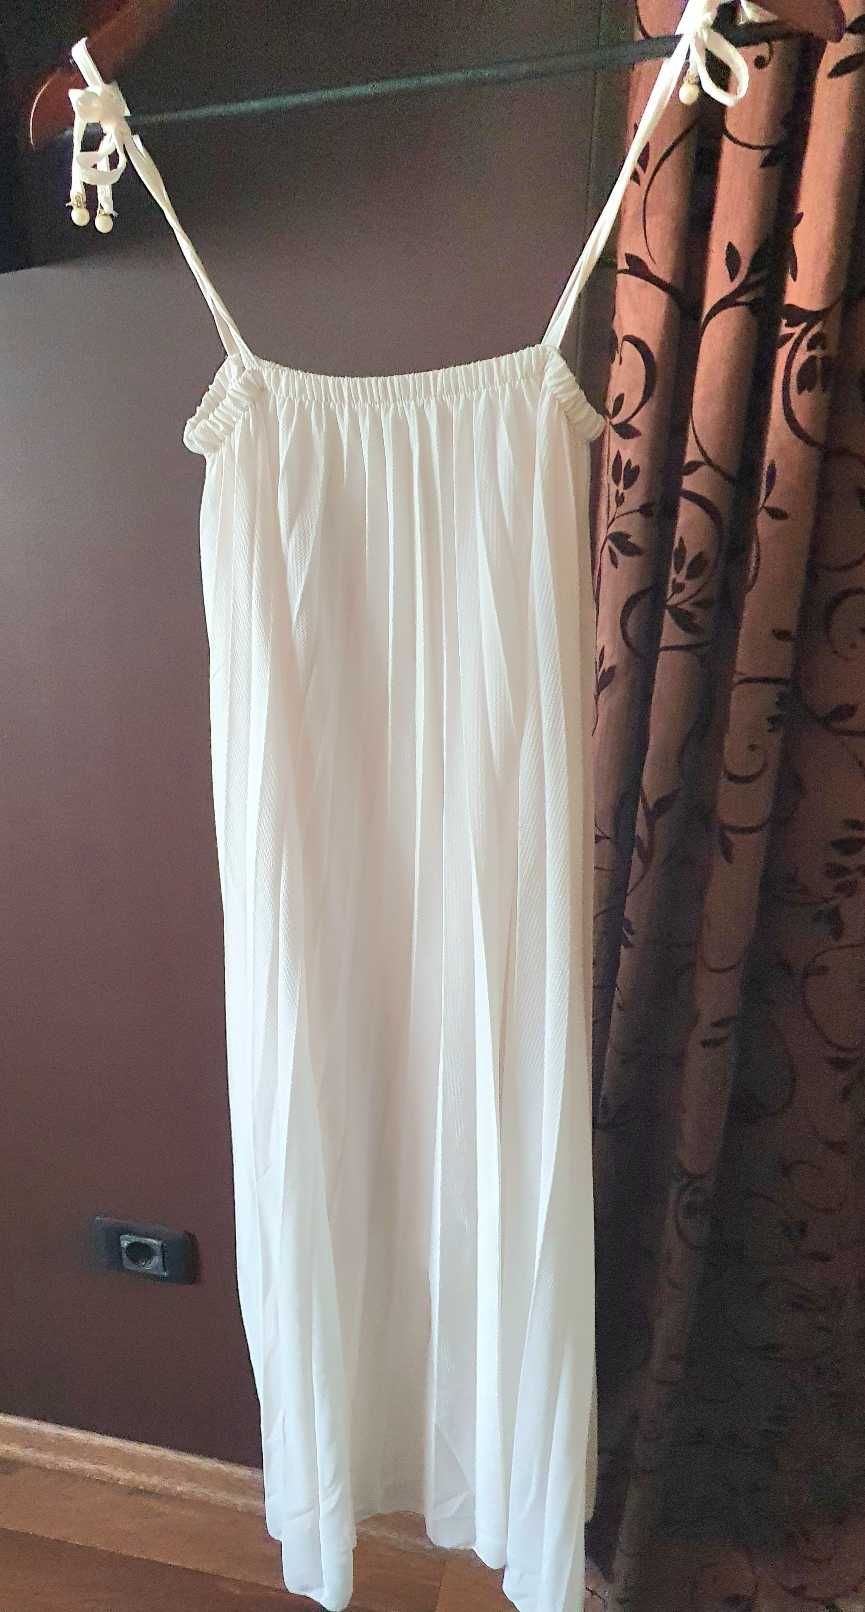 Бяла рокля солей, подходяща от С до Л размер